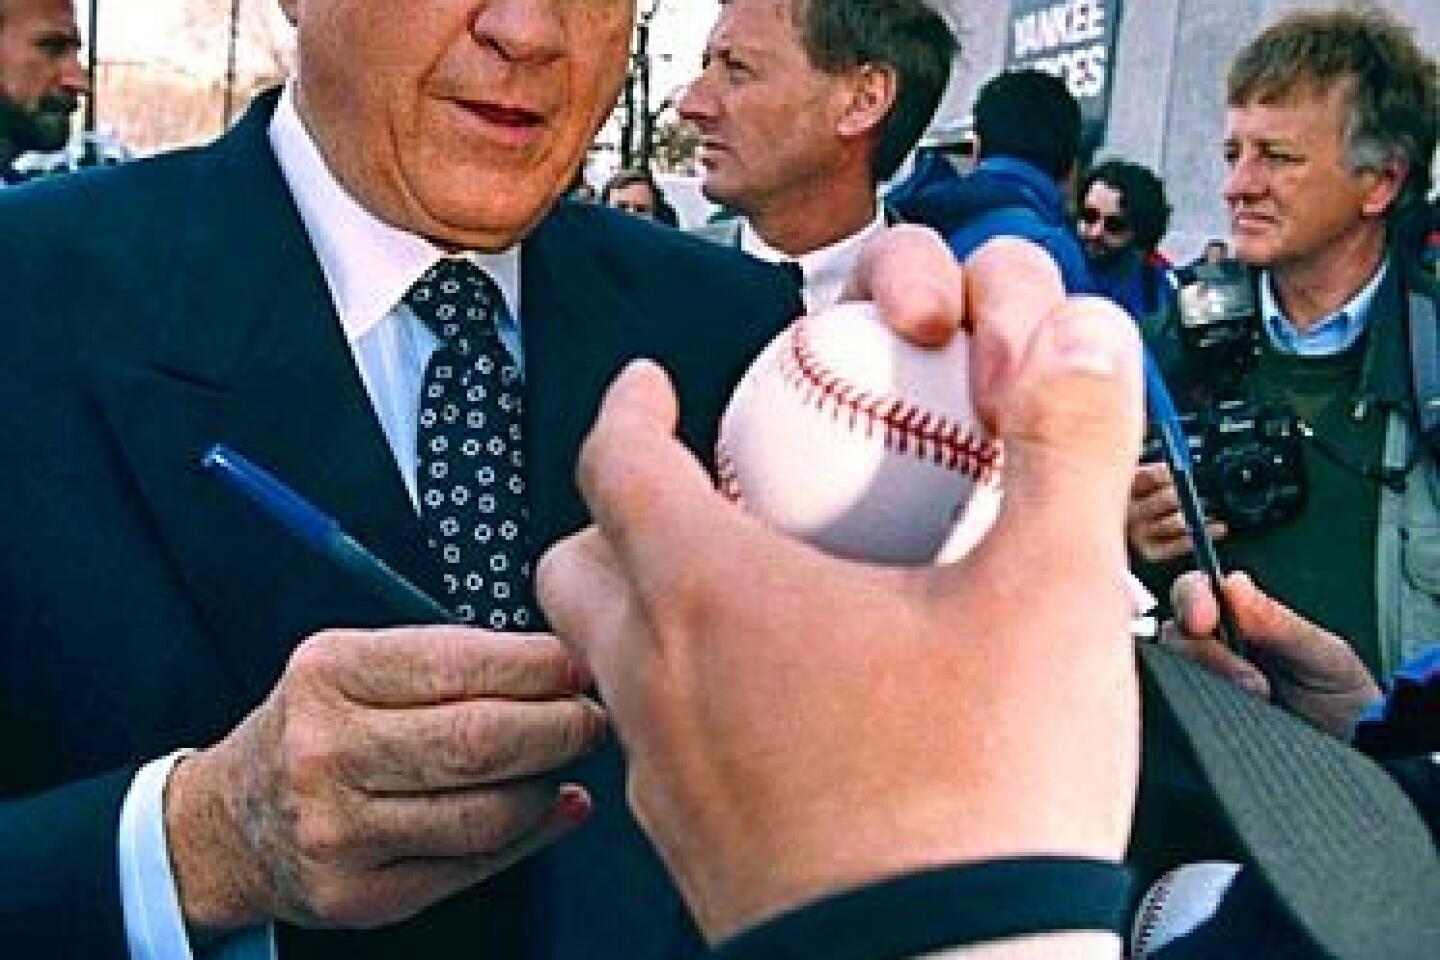 Yankees owner George Steinbrenner dead at 80